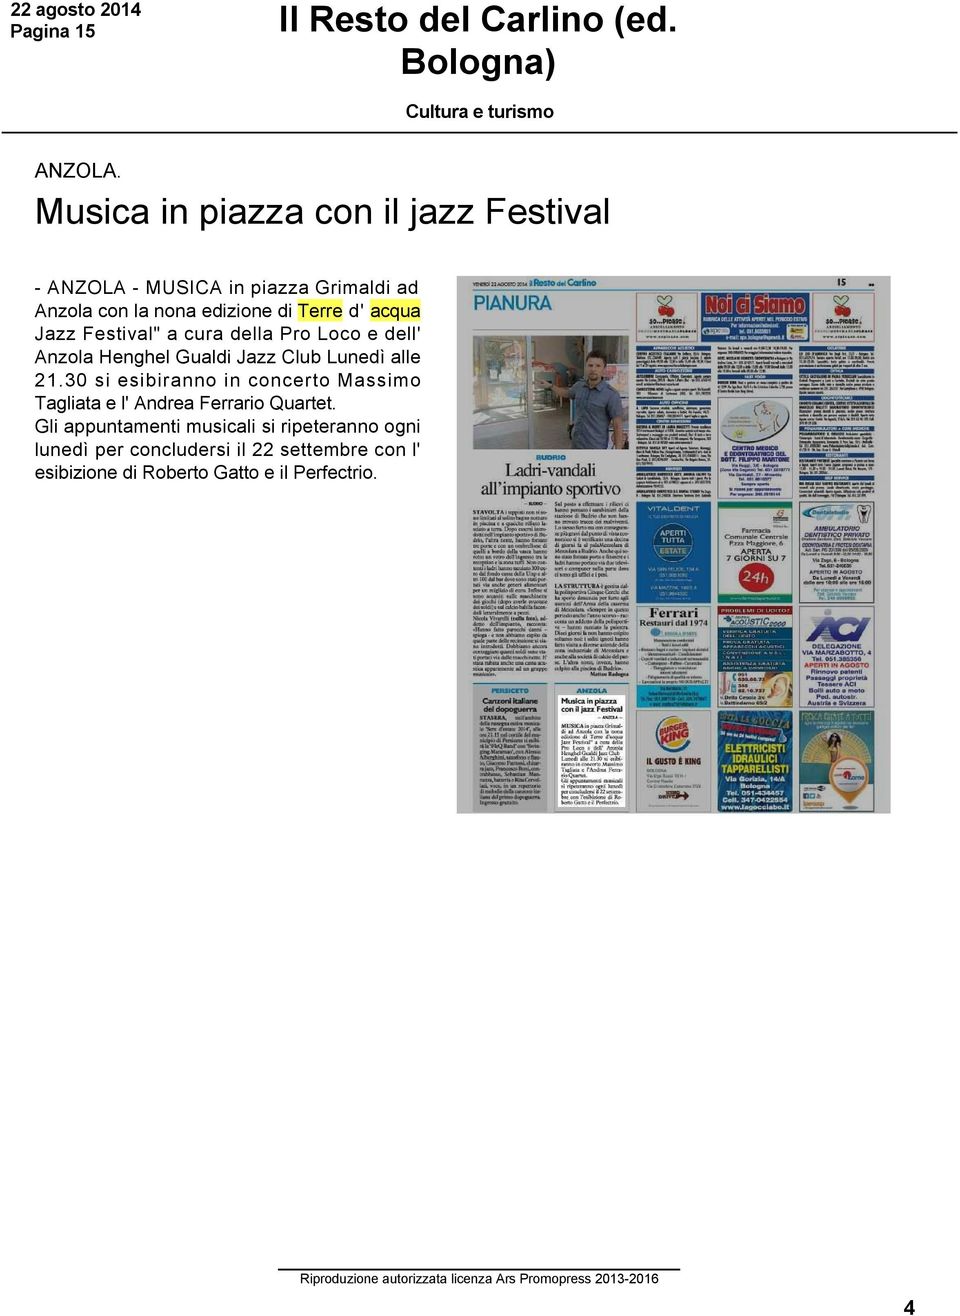 acqua Jazz Festival" a cura della Pro Loco e dell' Anzola Henghel Gualdi Jazz Club Lunedì alle 21.